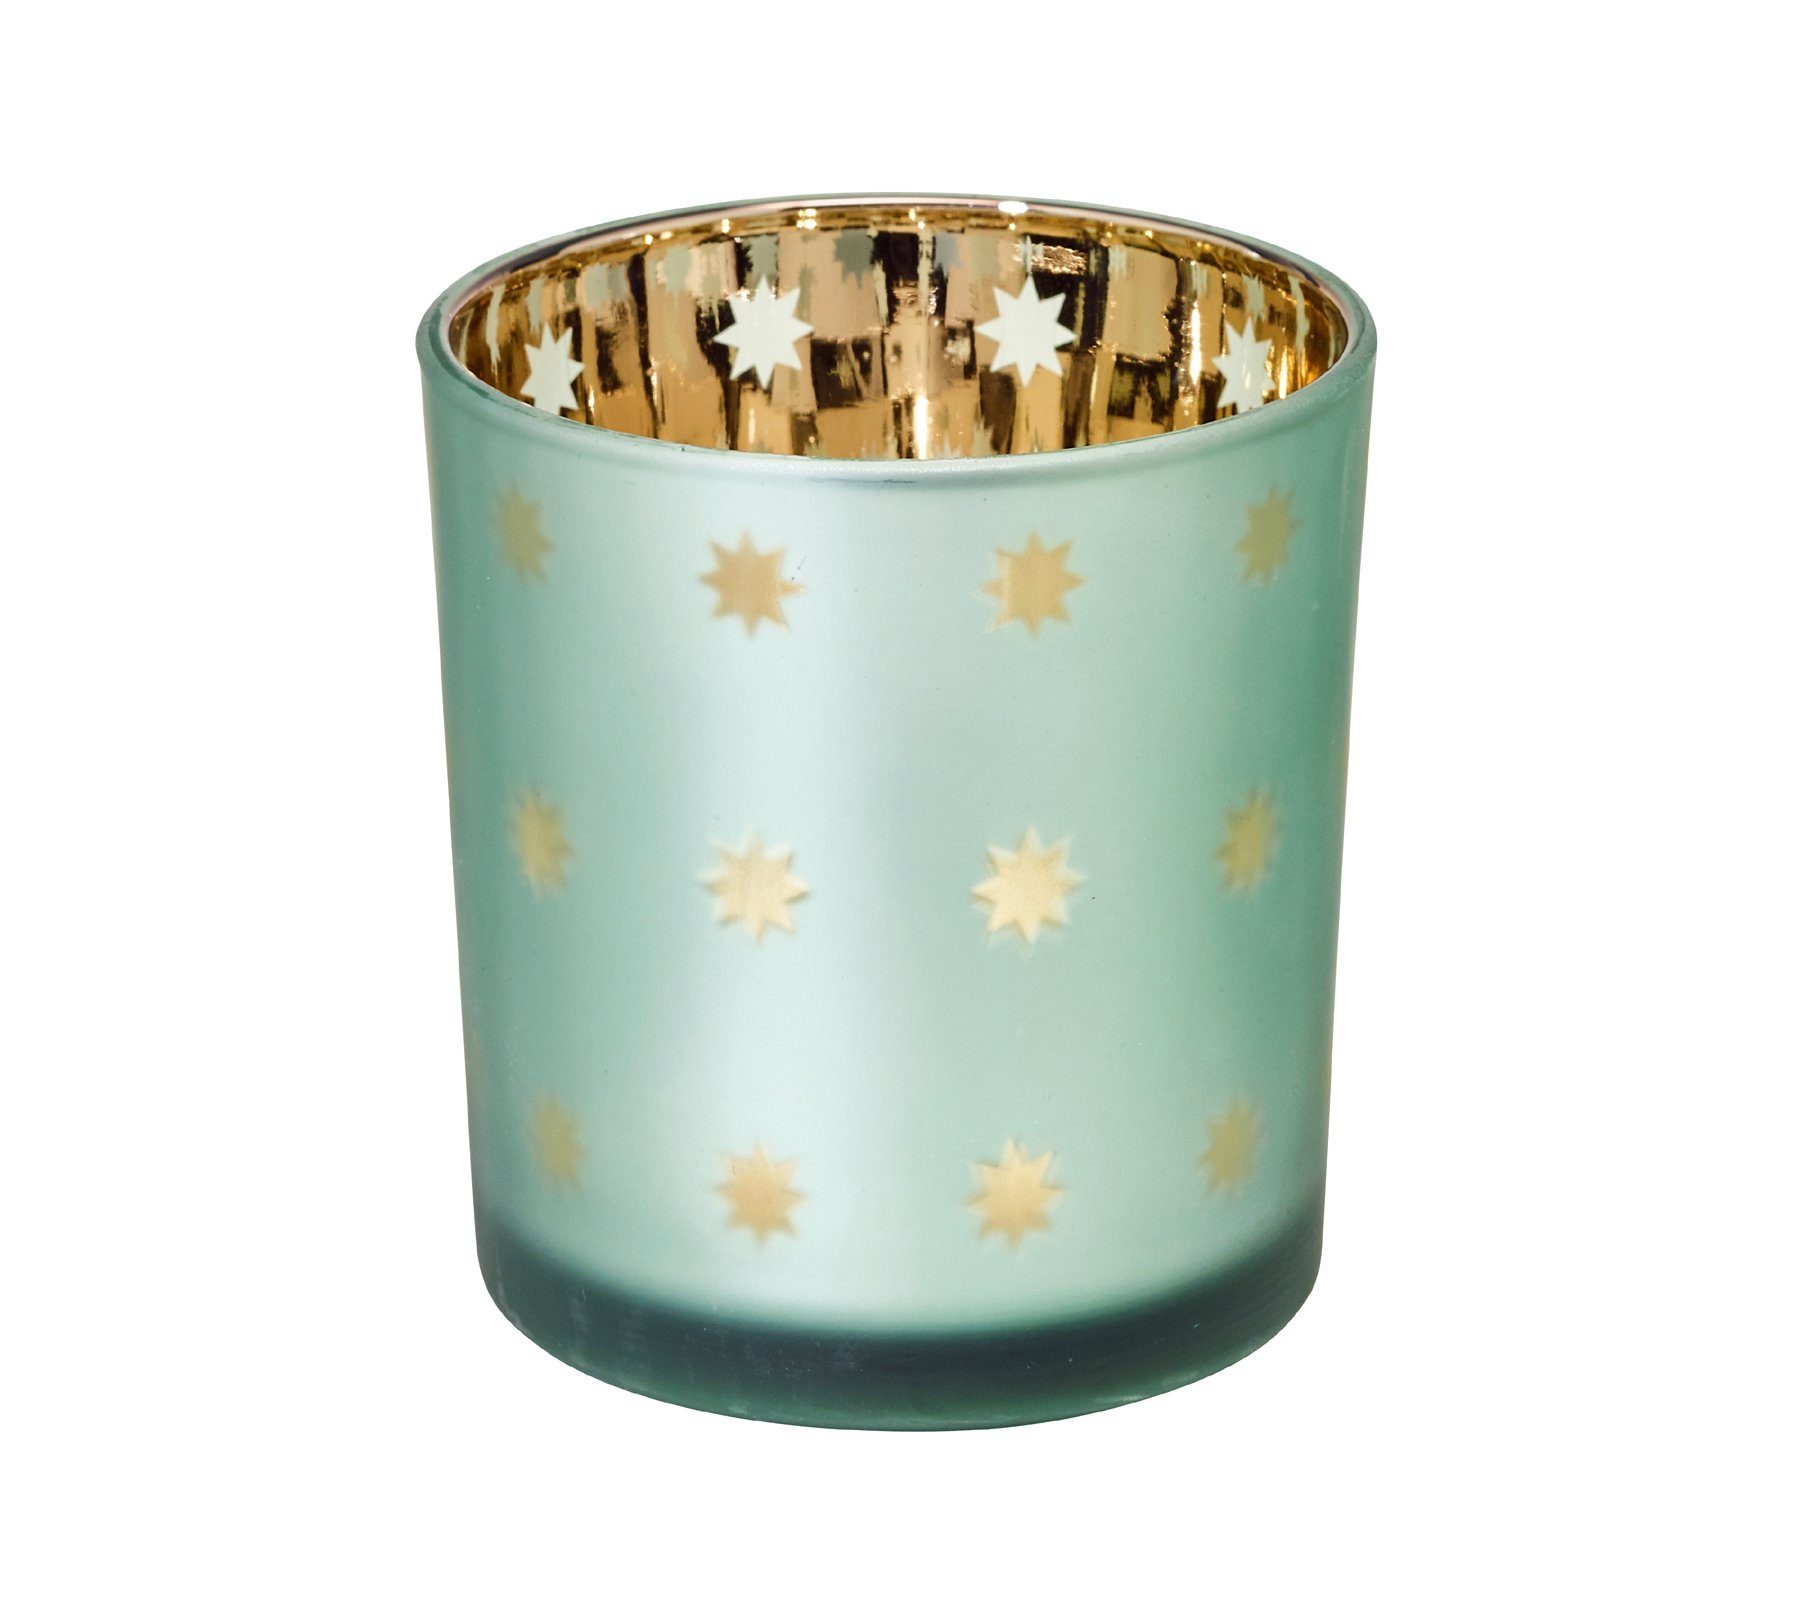 EDZARD Windlicht Duco, Teelichthalter aus Glas mit Sternen-Design,  Teelichtglas mit Innenseite in Gold-Optik, für Teelichter und Maxi- Teelichter, Höhe 8 cm, Ø 7,3 cm